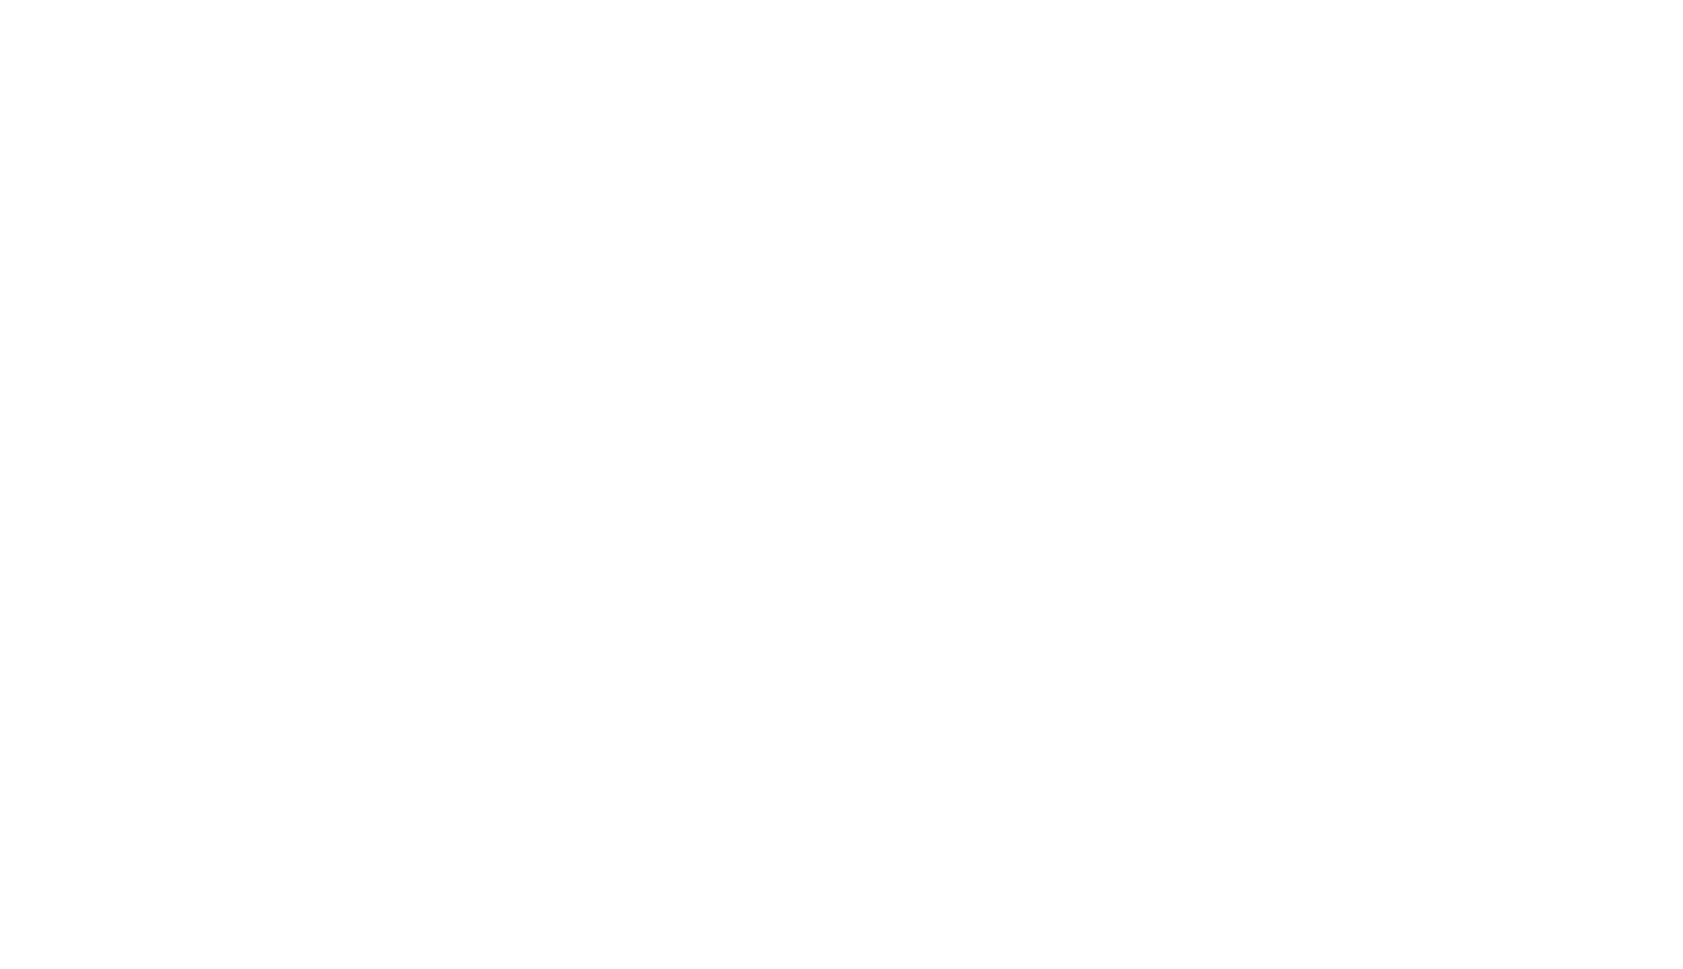 larryturner-vertical-white-small